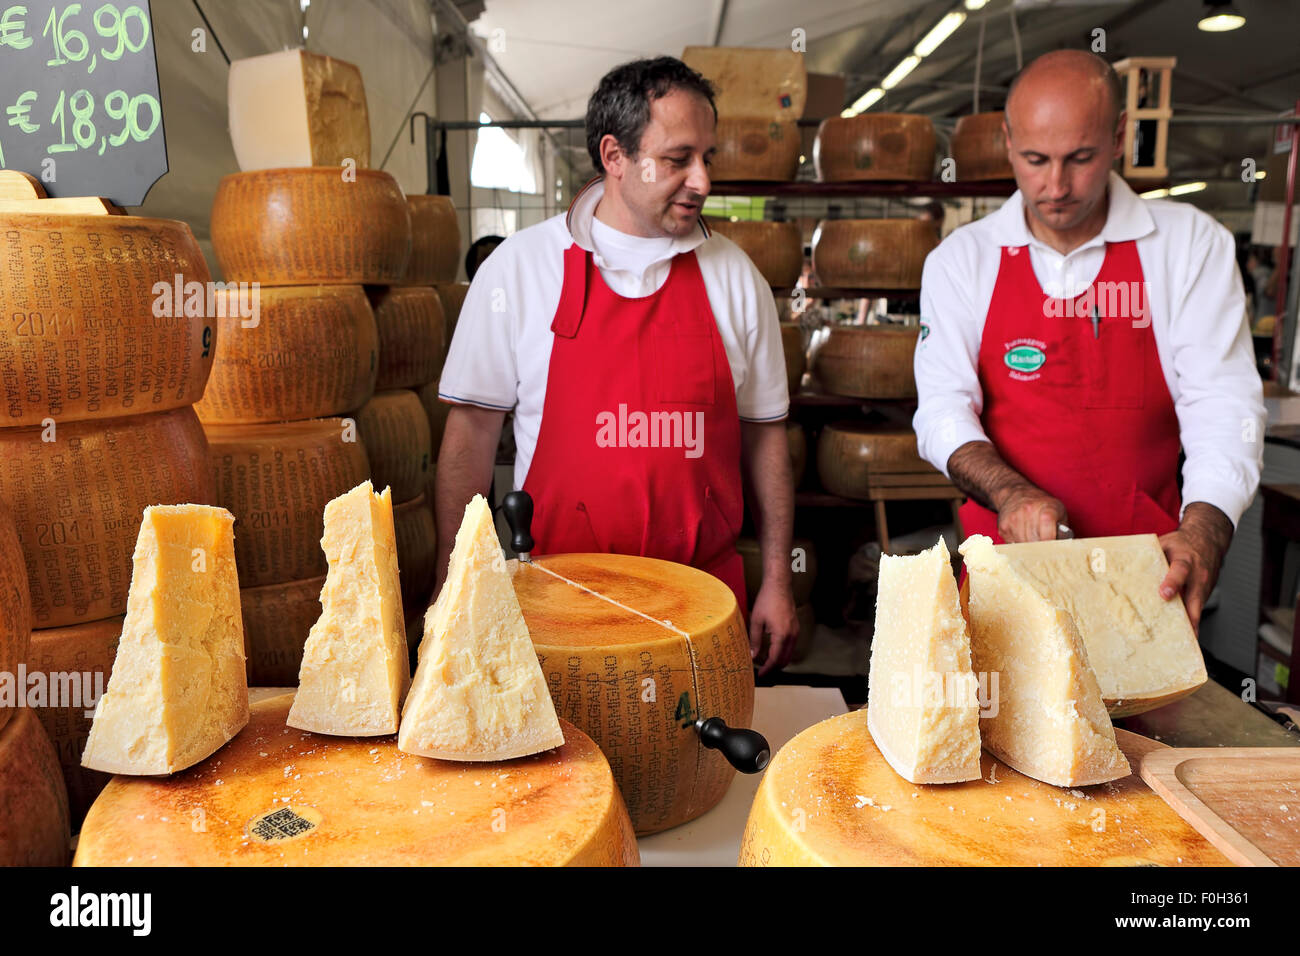 Deux fromagers et les peuplements de Parmesan - fromage italien fabriqué à partir de lait cru de vache. Banque D'Images